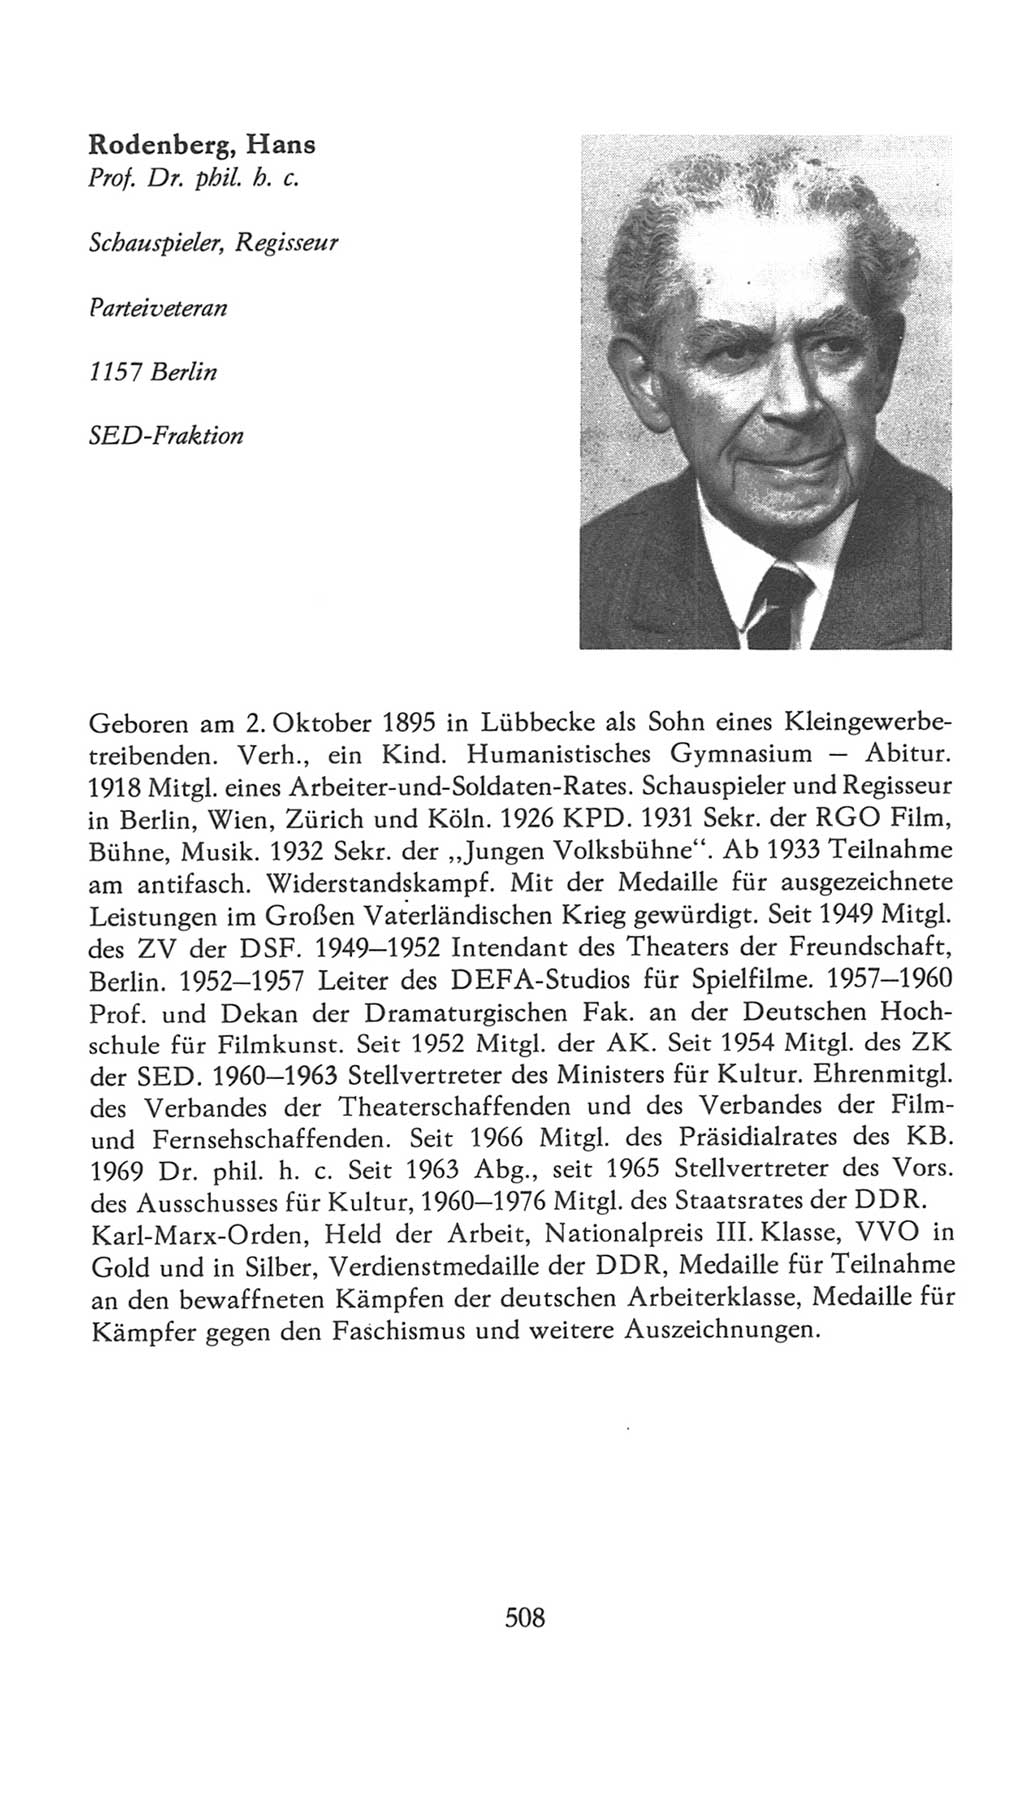 Volkskammer (VK) der Deutschen Demokratischen Republik (DDR), 7. Wahlperiode 1976-1981, Seite 508 (VK. DDR 7. WP. 1976-1981, S. 508)